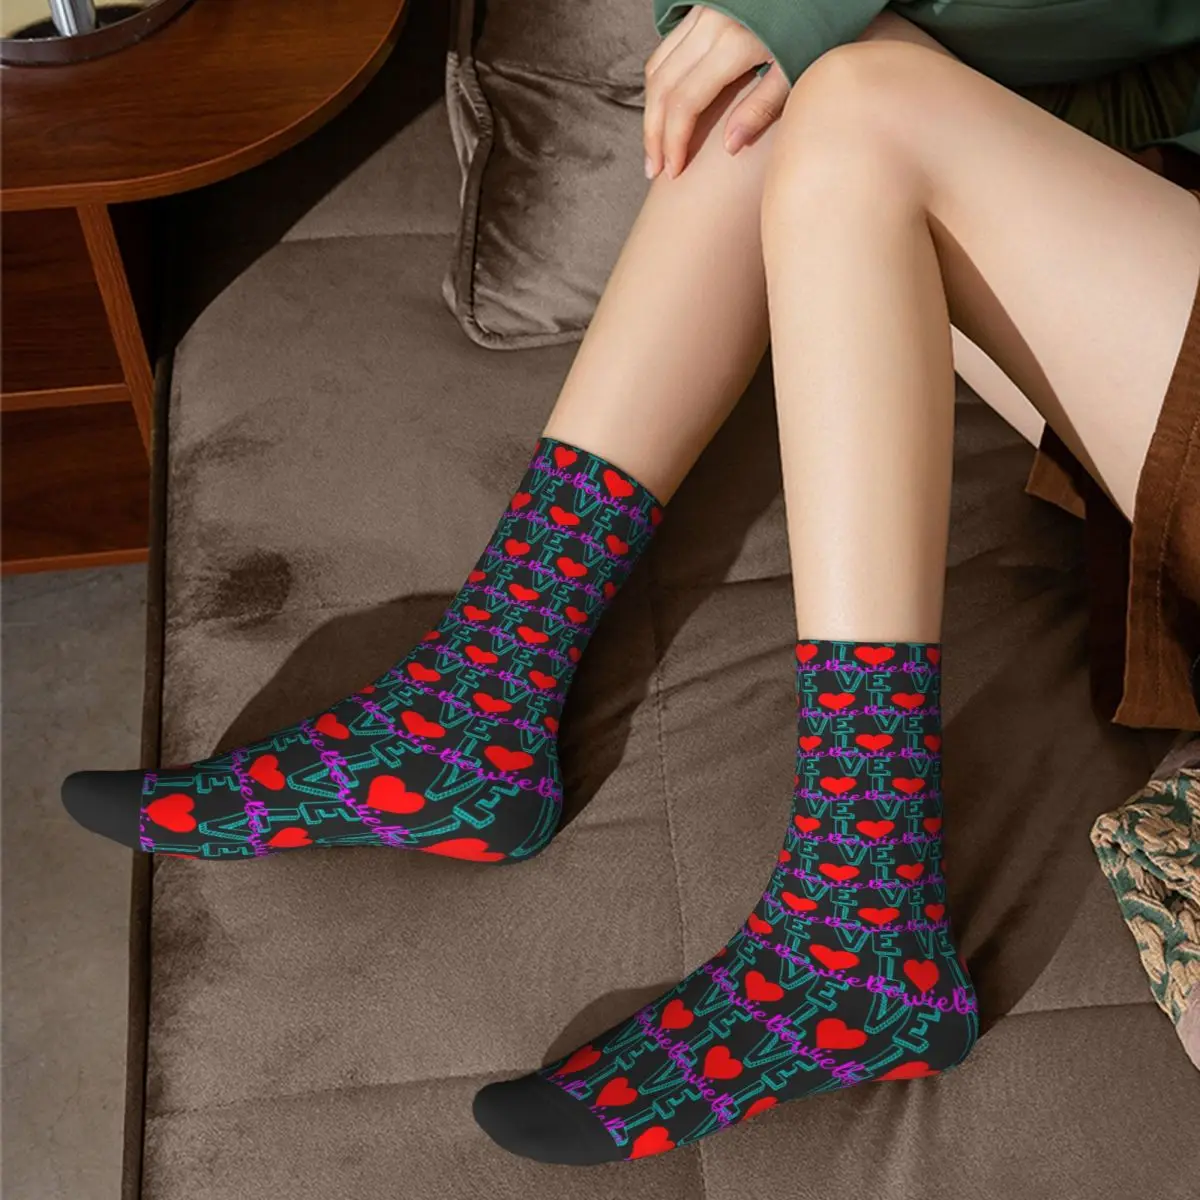 Ластични чорапи Bowie Bowieic (2) R198 с графичен дизайн, най-ДОБРЕ КУПИ ластични чорапи на Онази в контрастен цвят5